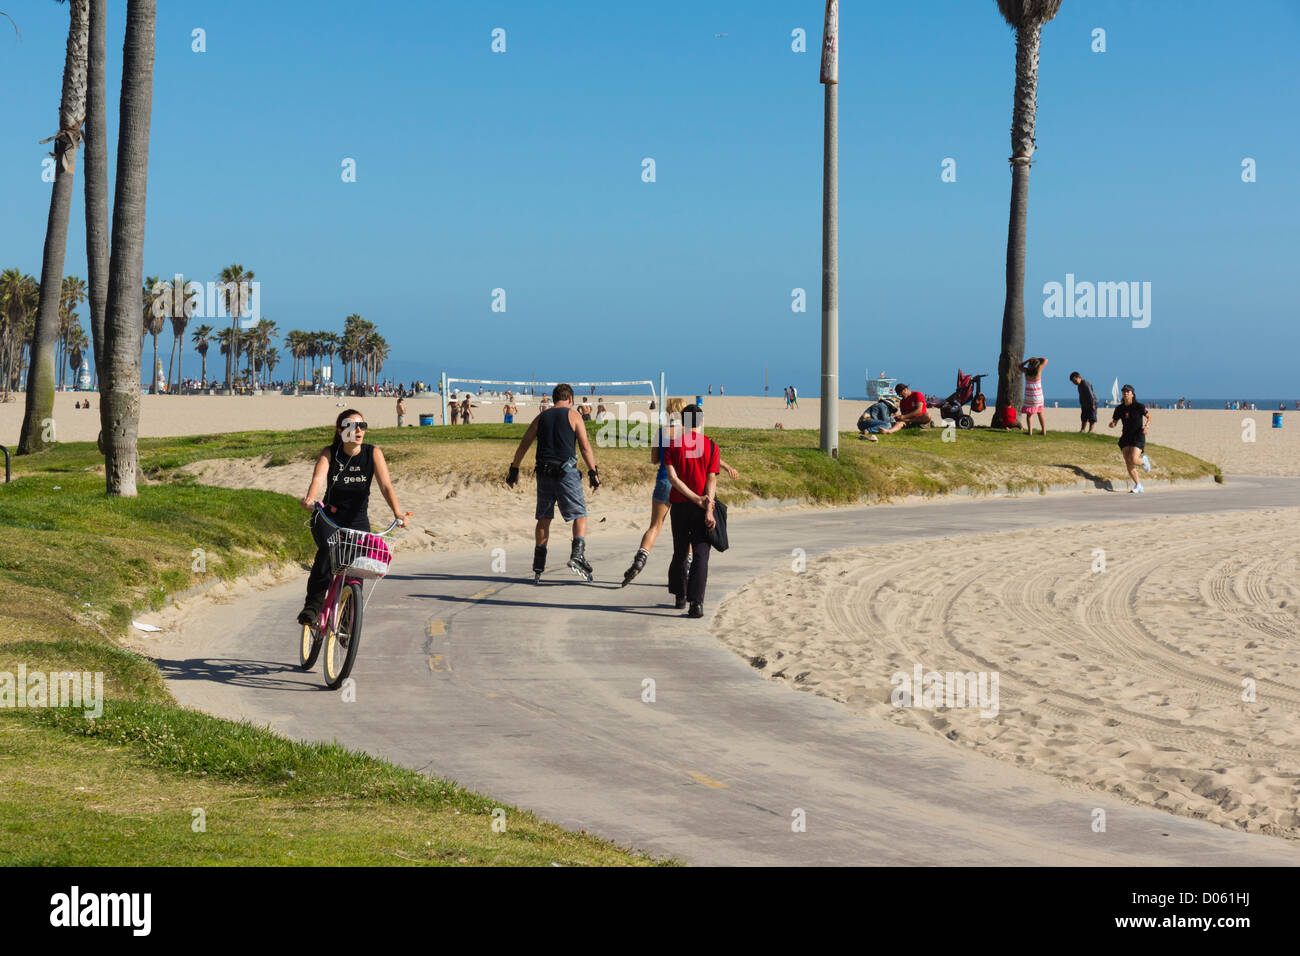 La spiaggia di Venezia, la California SEASIDE RESORT - la spiaggia da passeggiata e ciclo-percorso di skateboard. In-line skater e il ciclista. Foto Stock